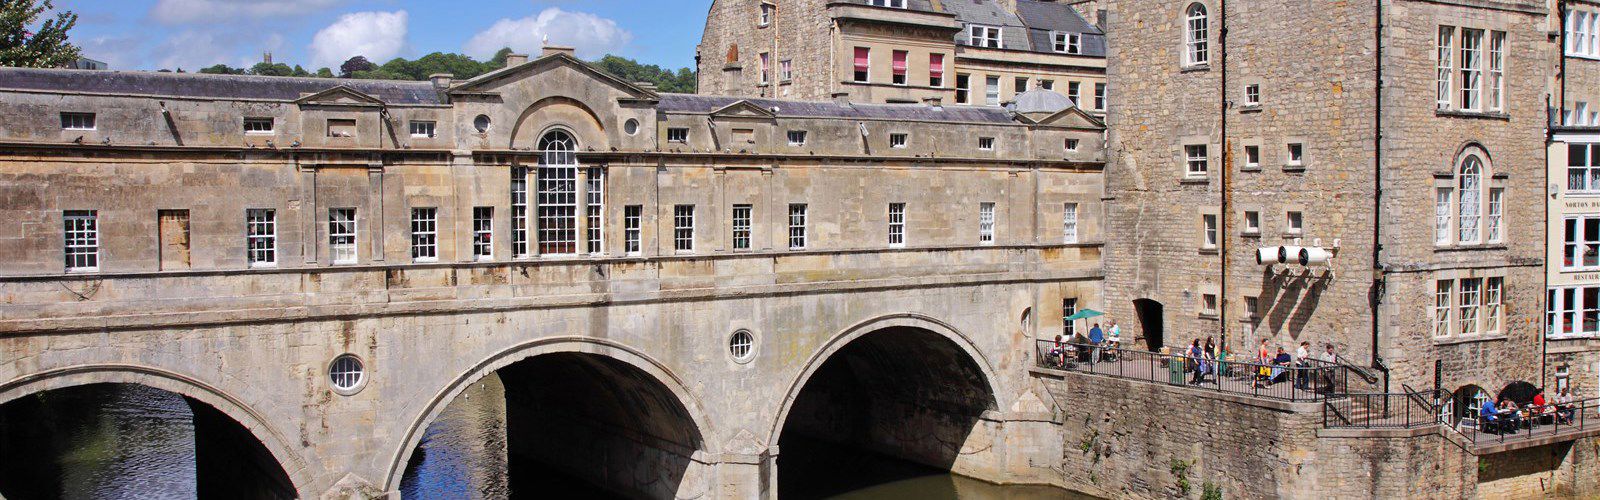 Pulteney Bridge In Bath: Visiting Somerset